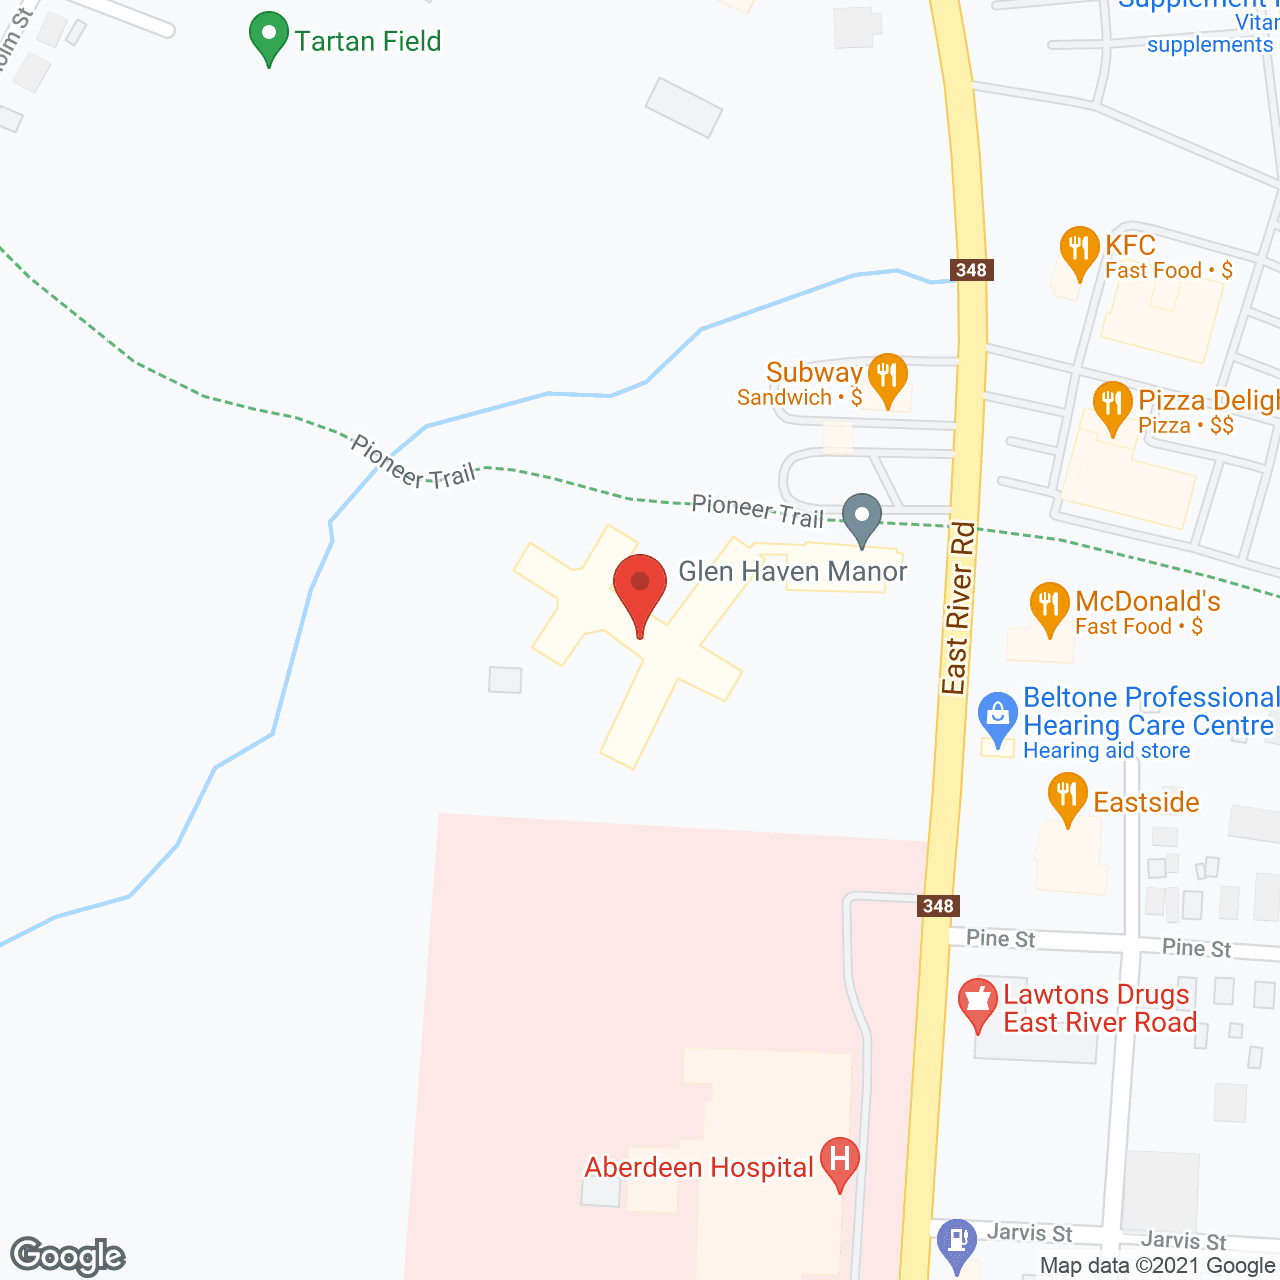 Glen Haven Manor in google map